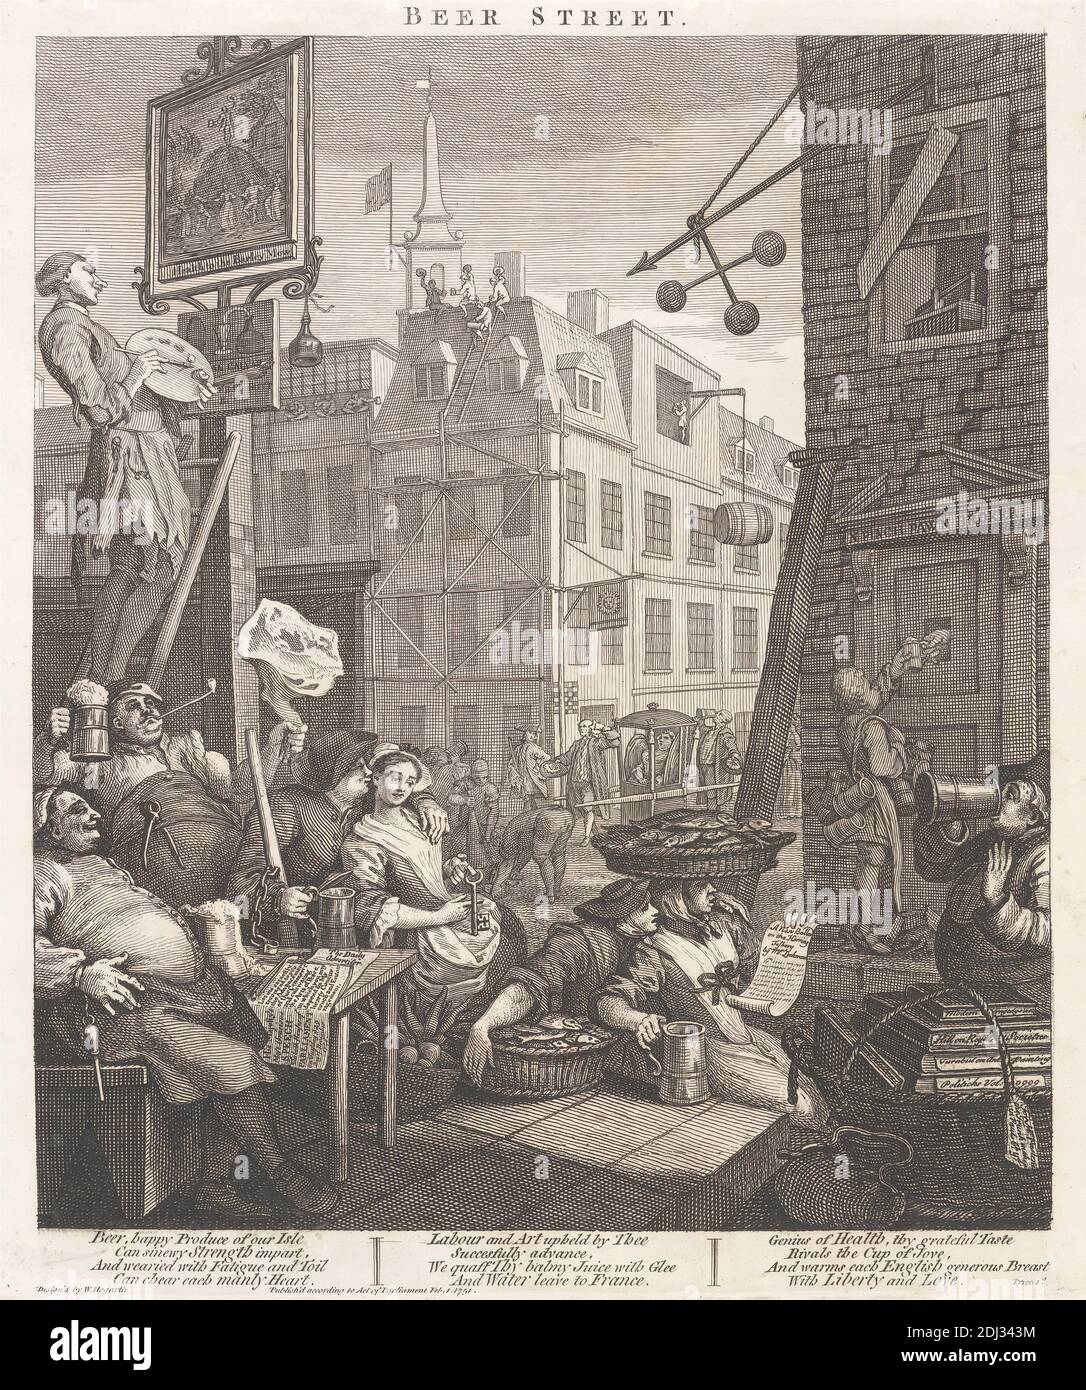 Beer Street, William Hogarth, 1697–1764, inglese, non datato, incisione, birra, caricatura, paesaggio urbano, soggetto del genere Foto Stock